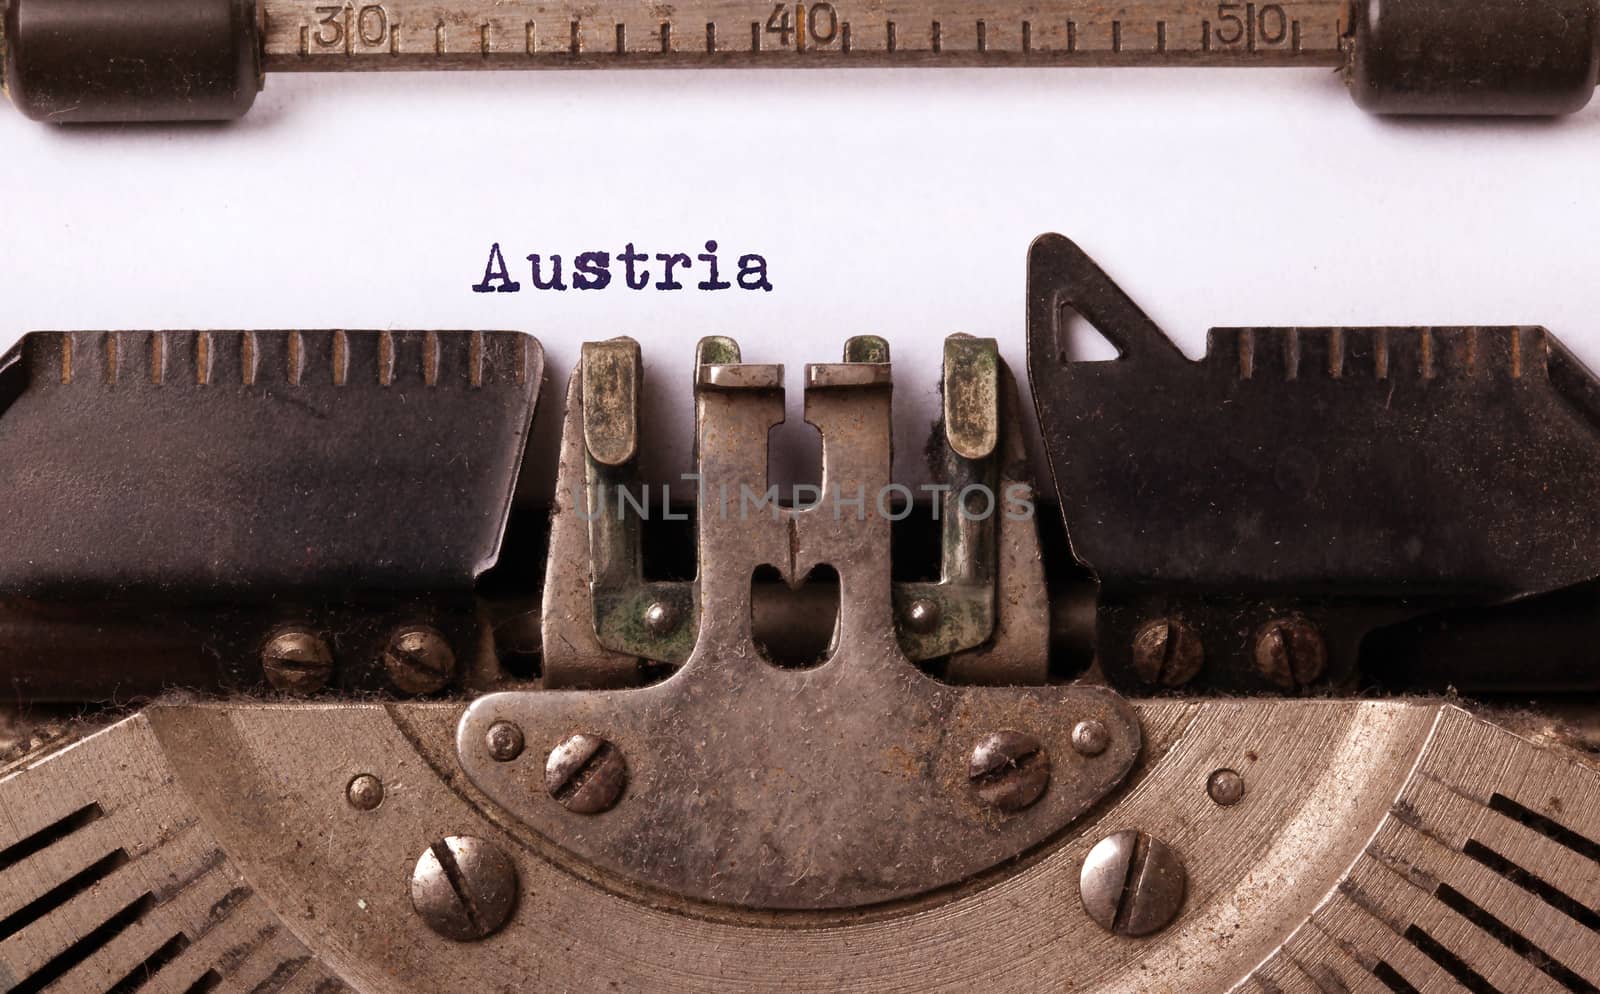 Old typewriter - Austria by michaklootwijk